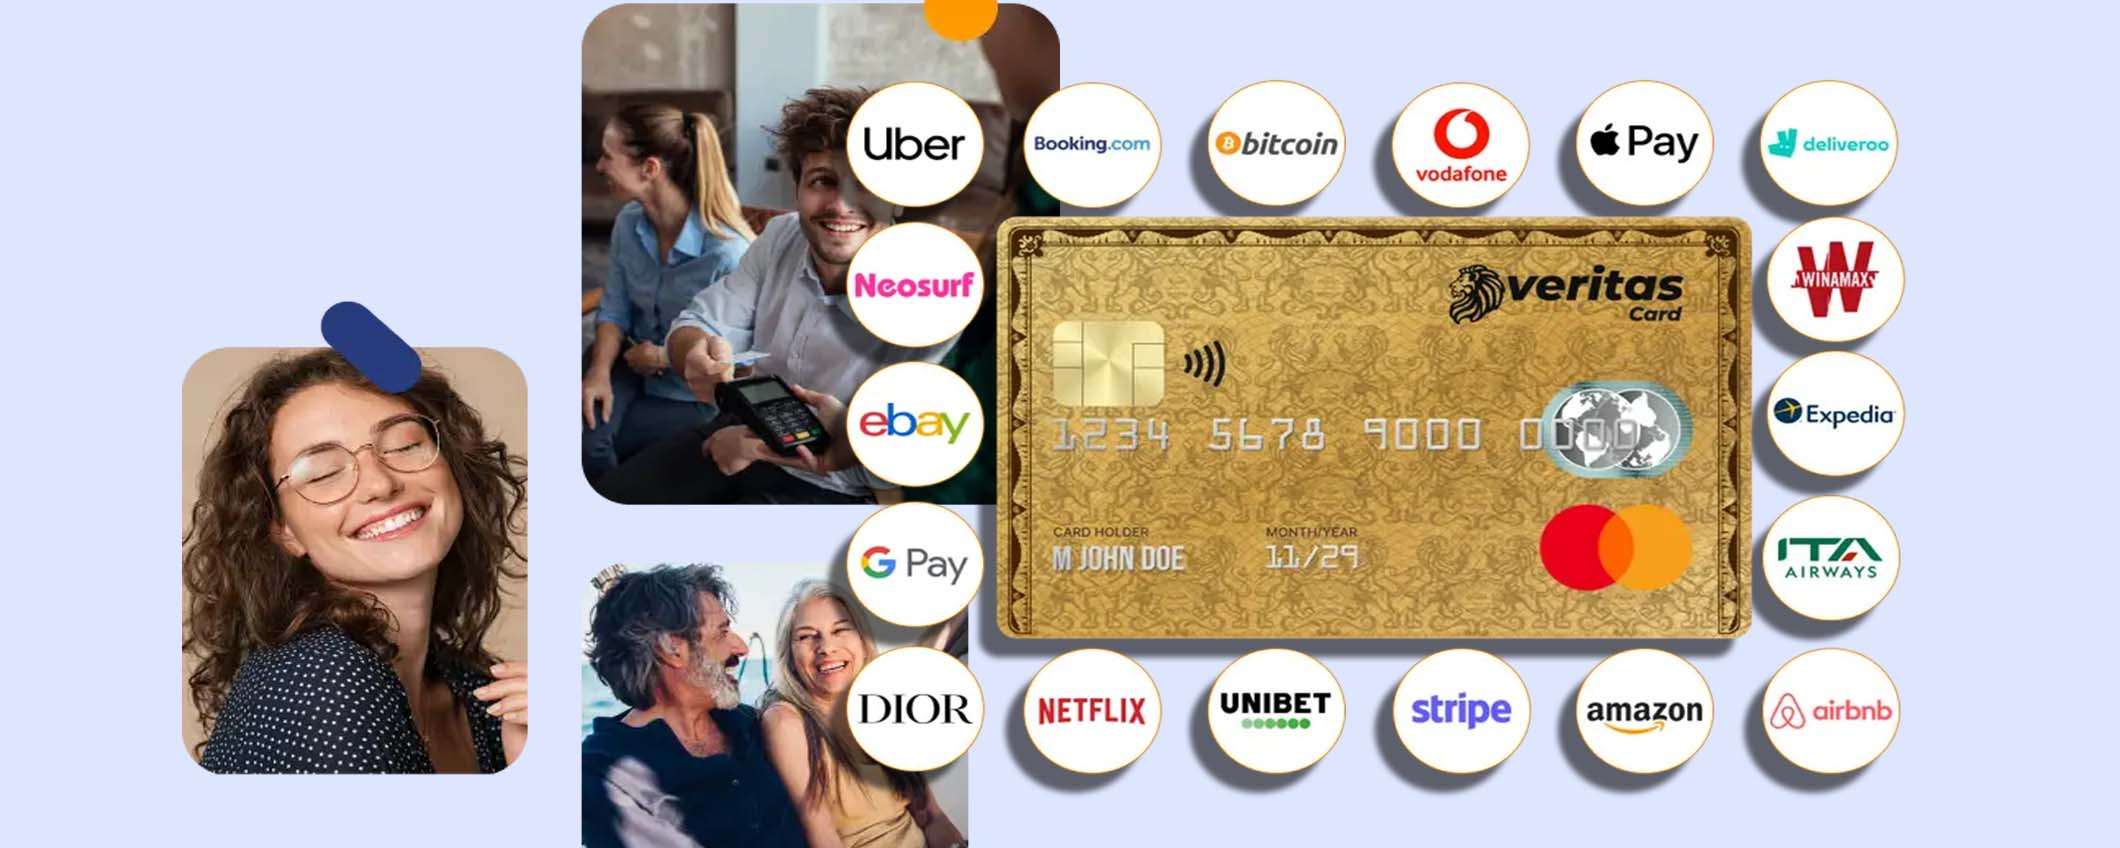 Carta Veritas: la prepagata MasterCard per acquistare liberamente